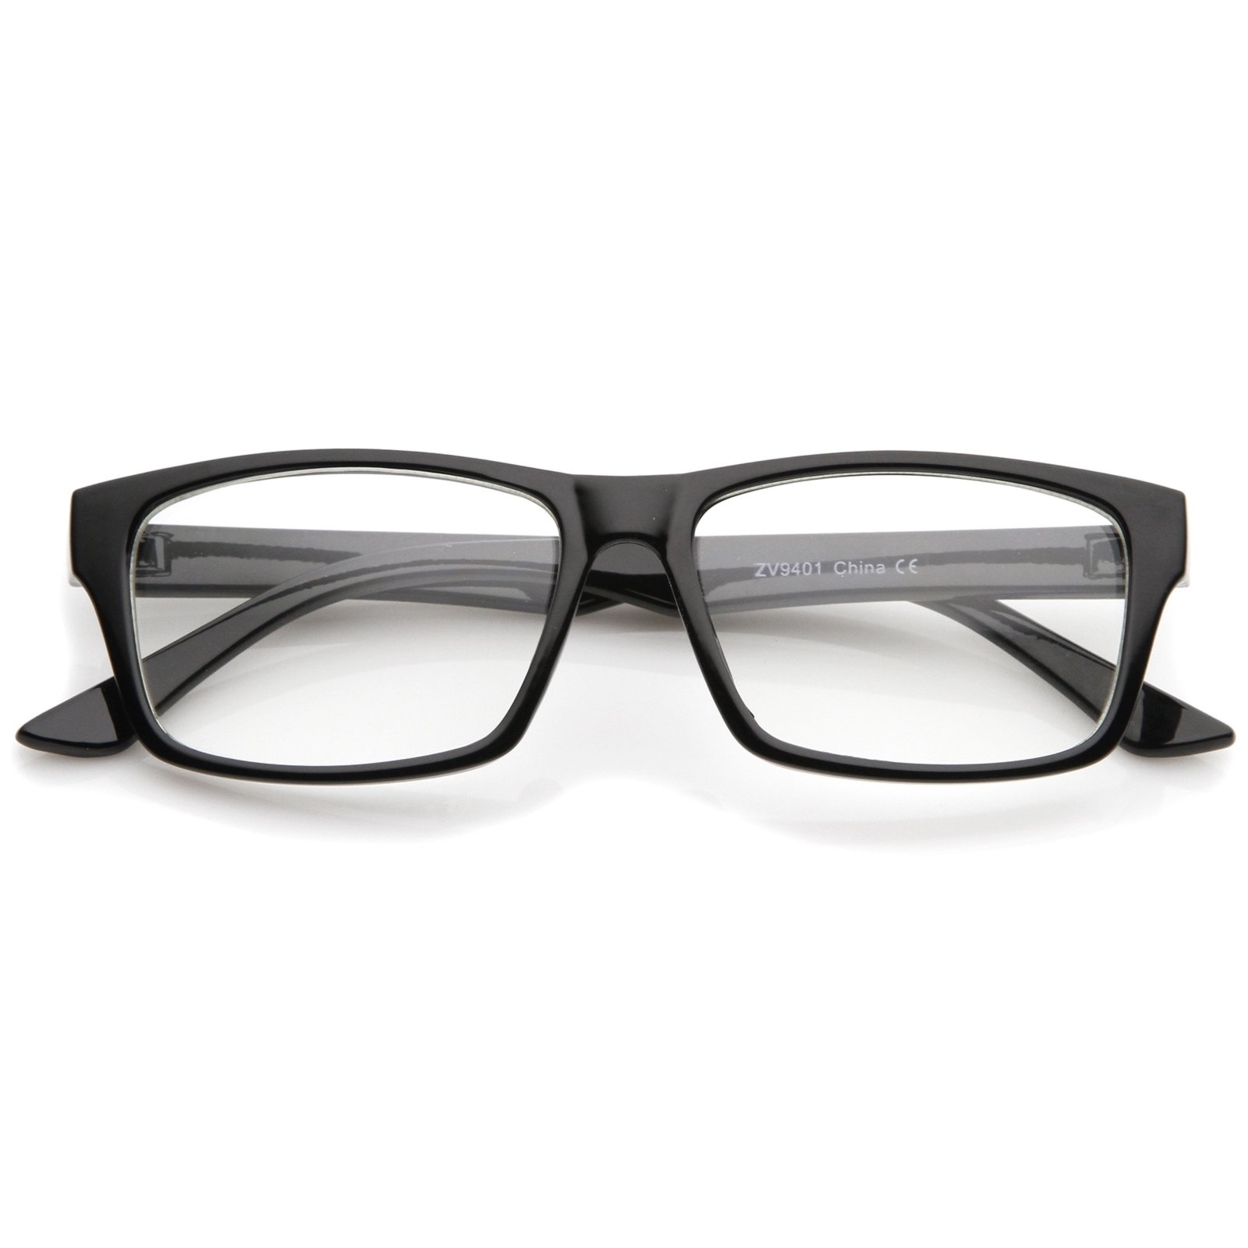 Modern Horn Rimmed Clear Lens Rectangle Eyeglasses 52mm - Shiny Tortoise / Clear